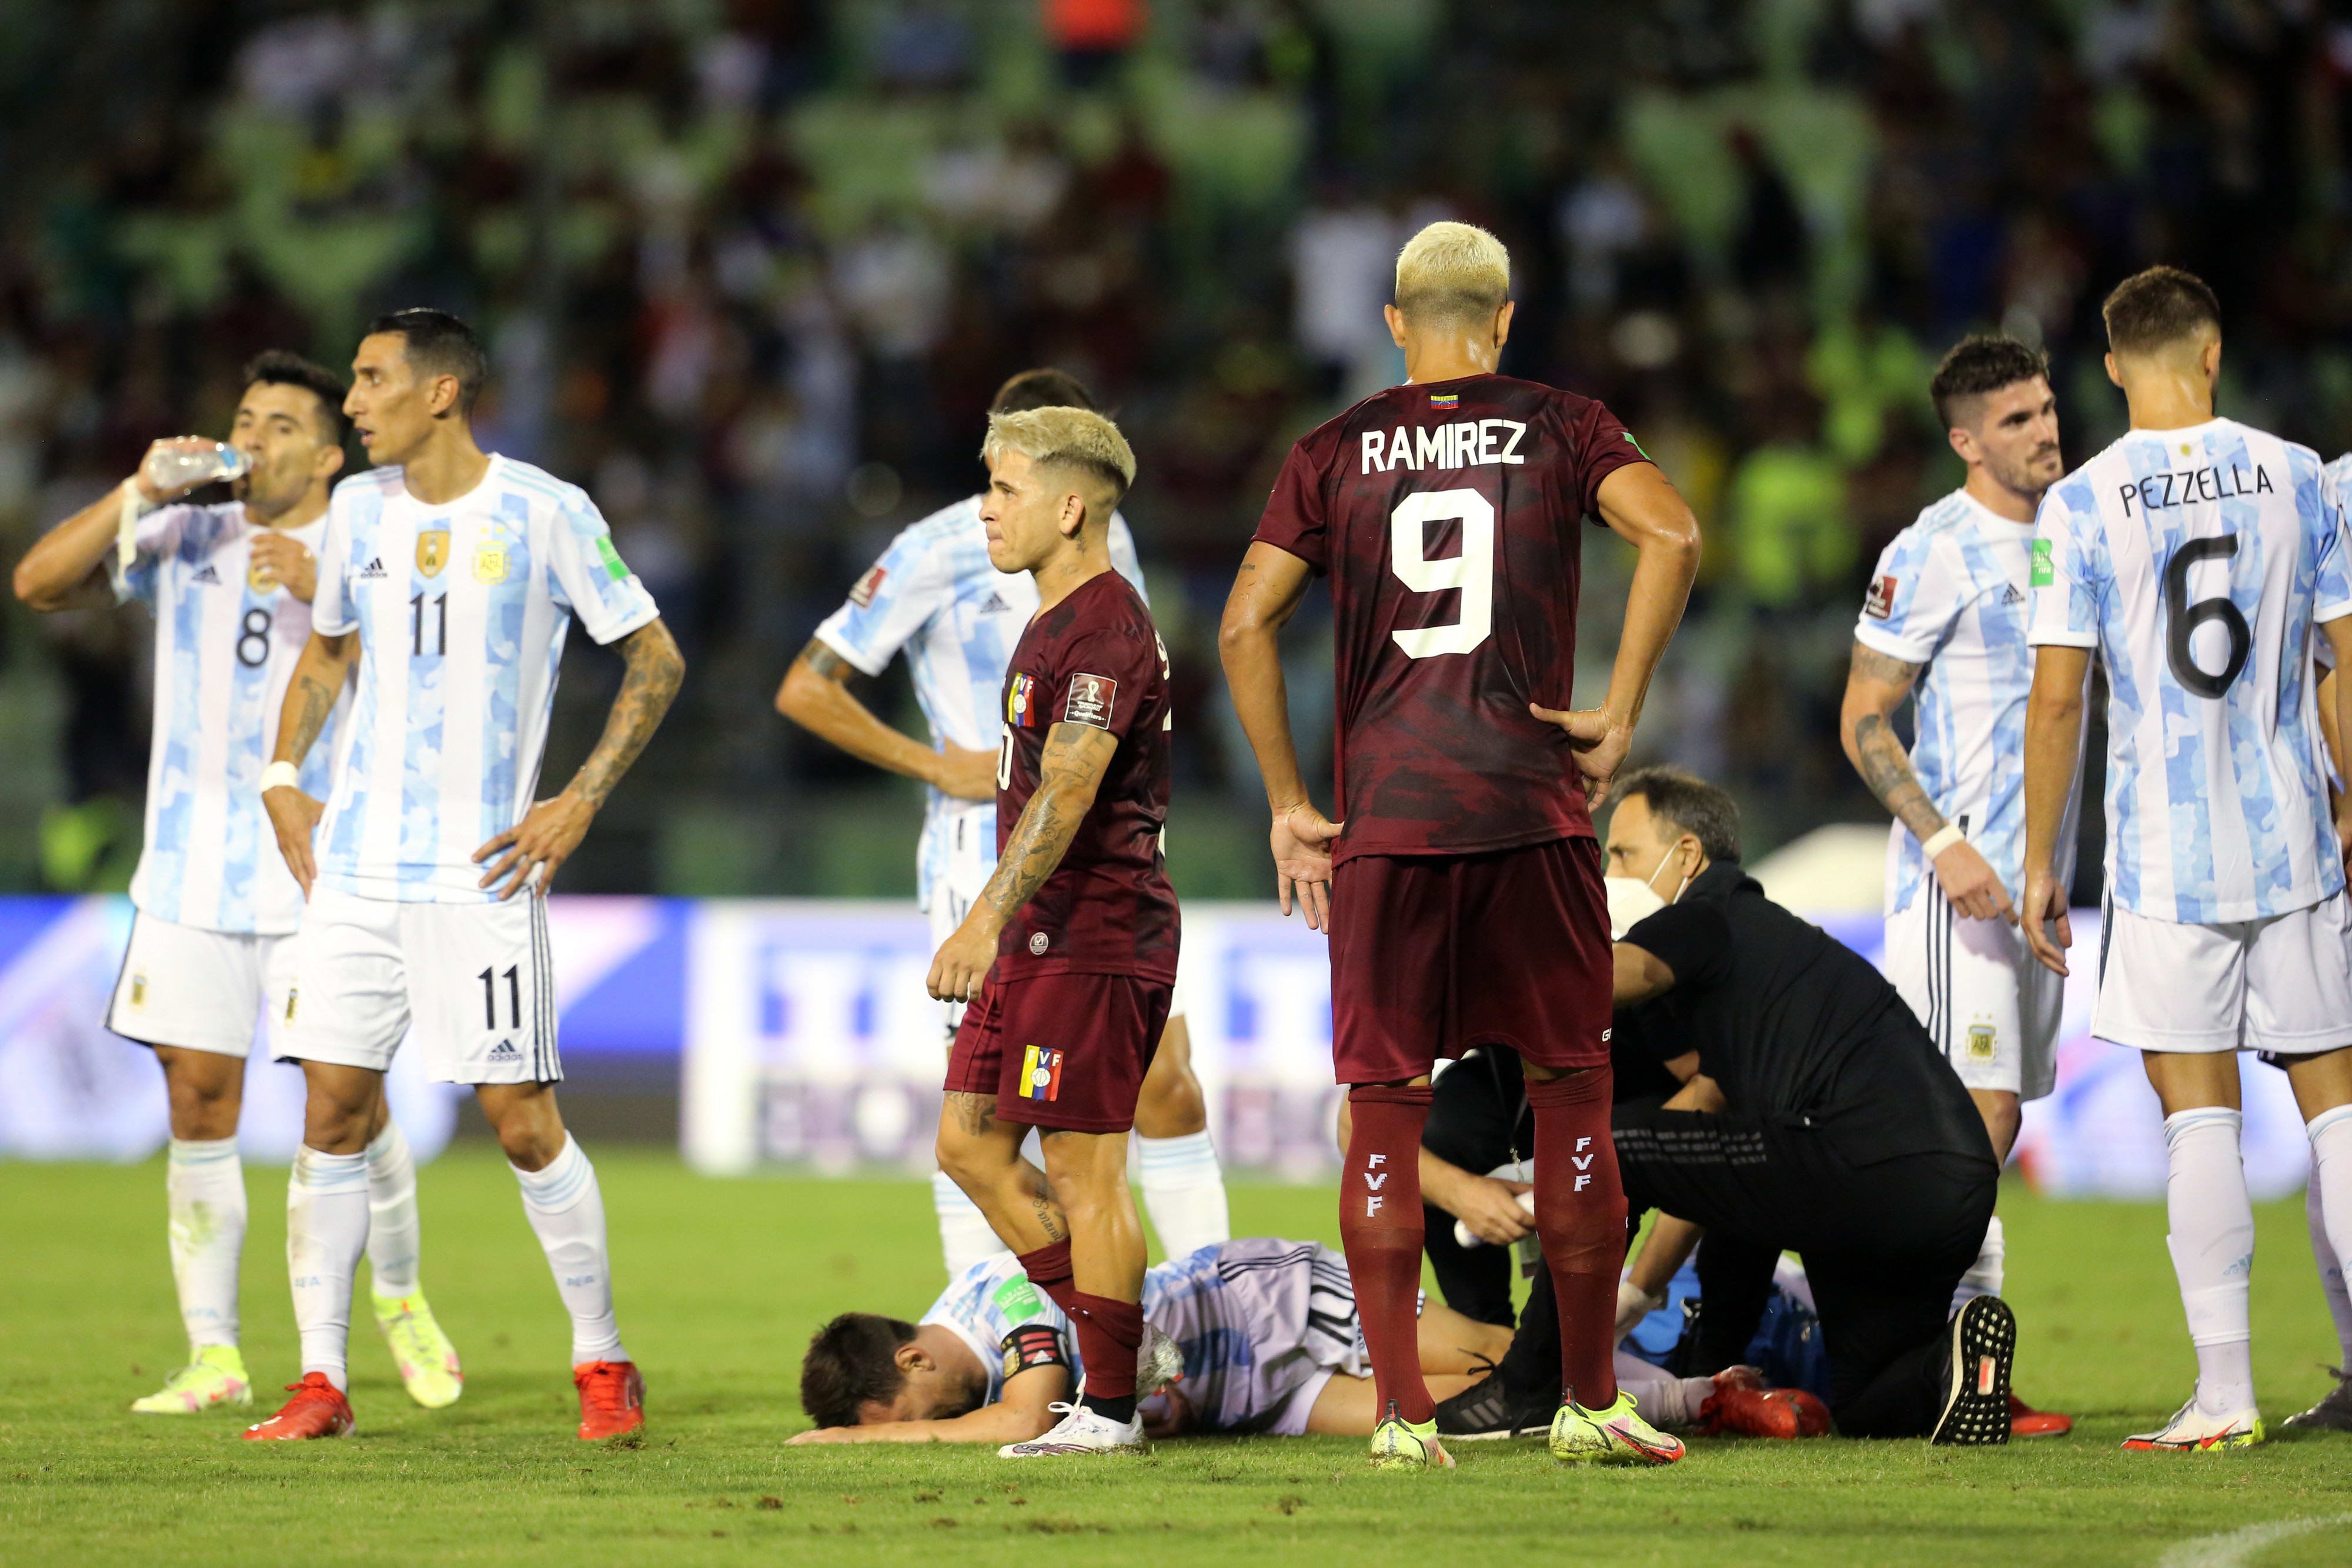 ליאונל מסי, נבחרת ארגנטינה אחרי שספג תיקול פראי